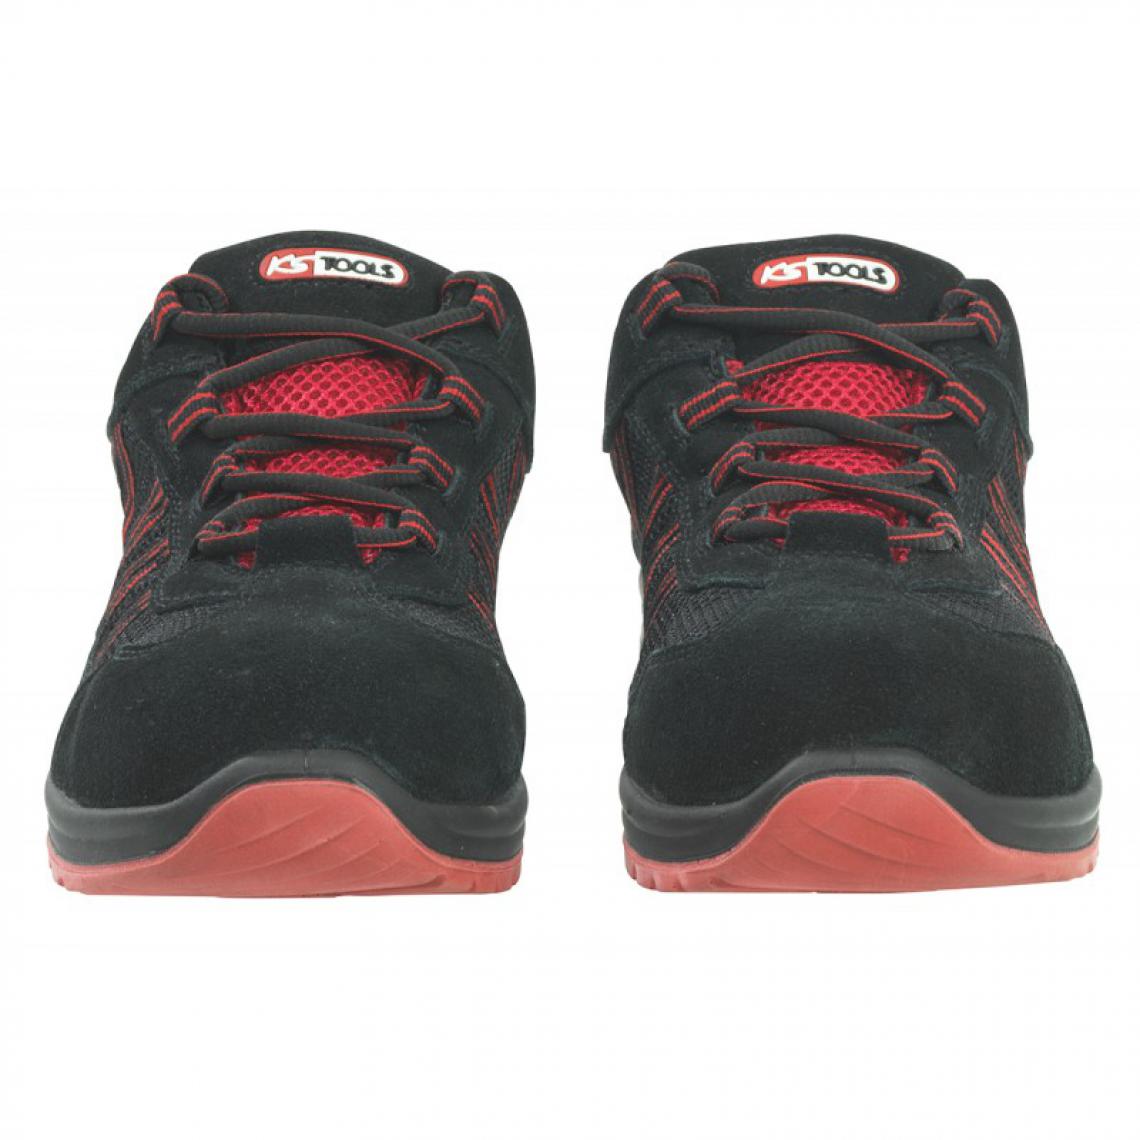 Kstools - Chaussures de sécurité KSTOOLS Couleur noire rouge taille 47 - Equipement de Protection Individuelle